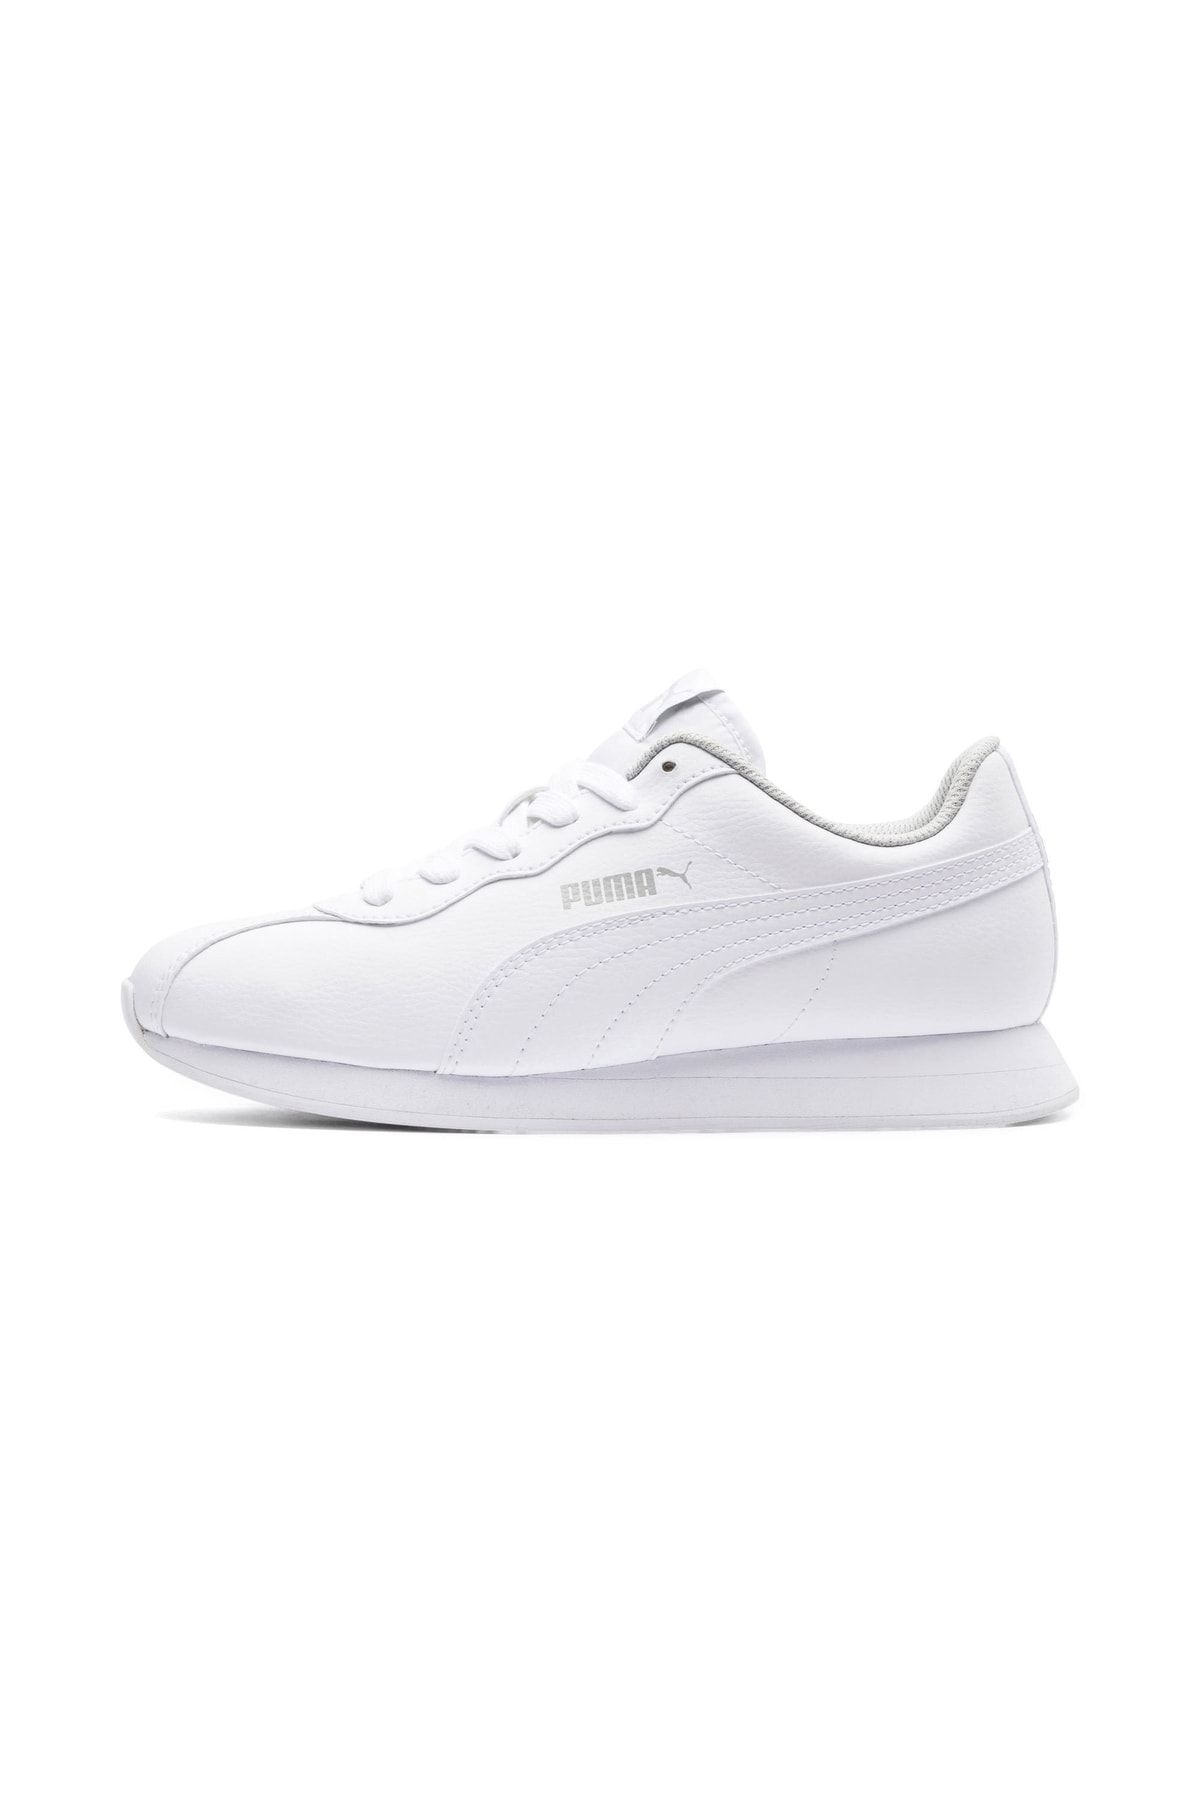 Puma Turin Ii Jr Beyaz Beyaz Kız Çocuk Sneaker Ayakkabı 100352185